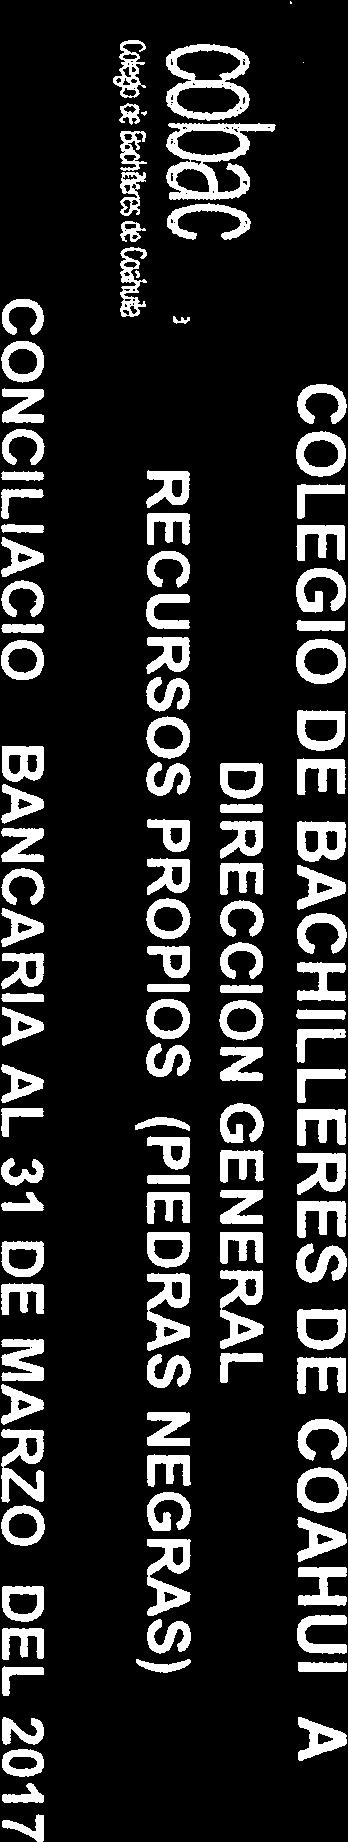 cba e COLEGIO DE BACHILLERES DE COAHUILA DIRECCION GENERAL RECURSOS PROPIOS (PIEDRAS NEGRAS) CONCILIACION